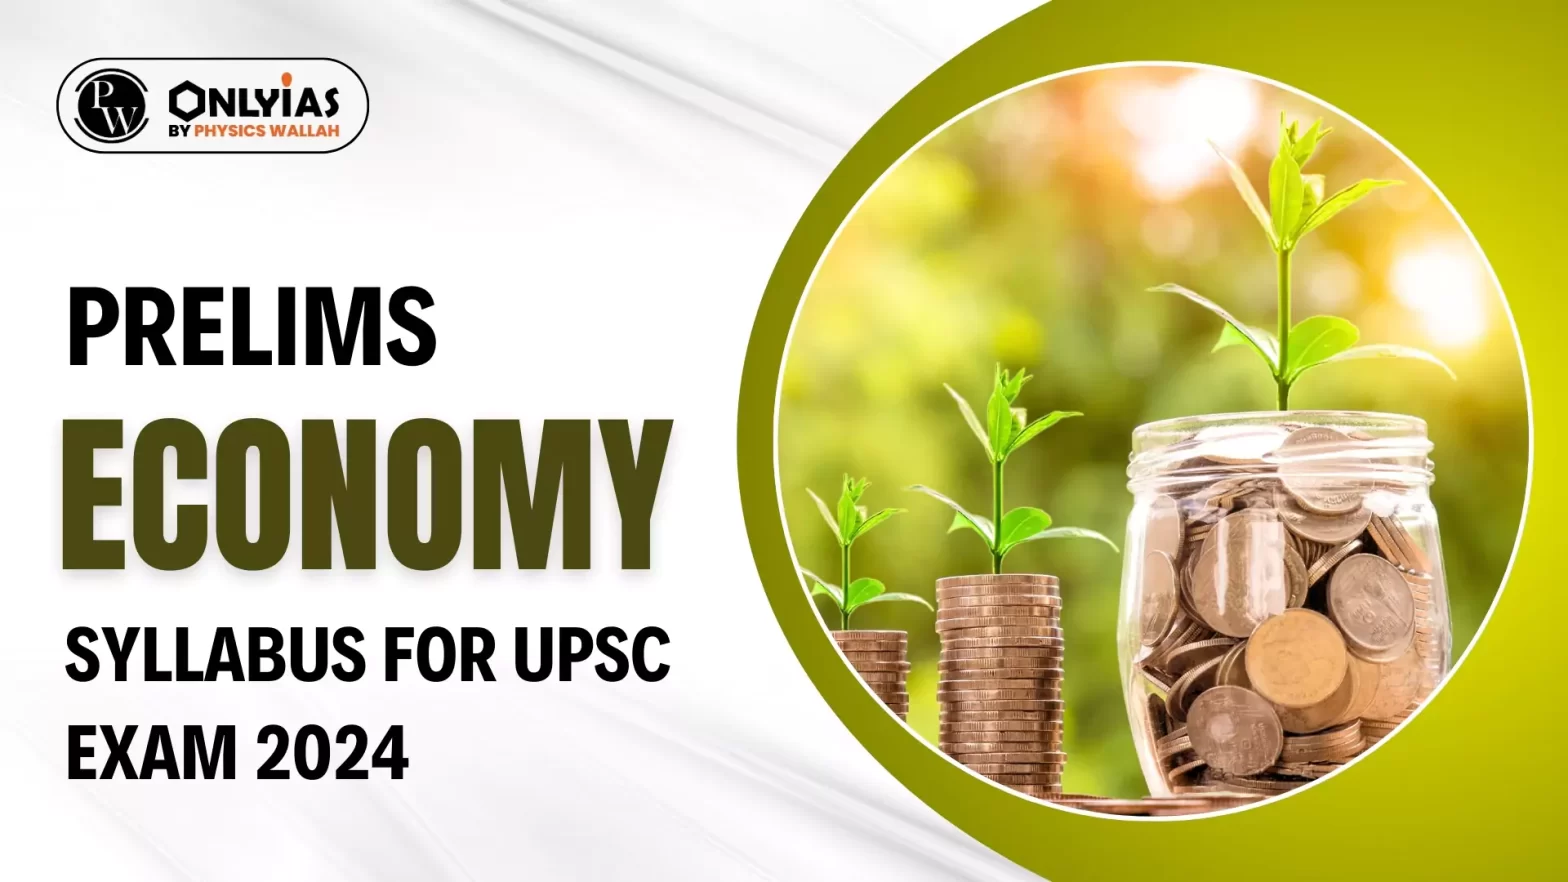 Prelims Economy Syllabus for UPSC Exam 2024